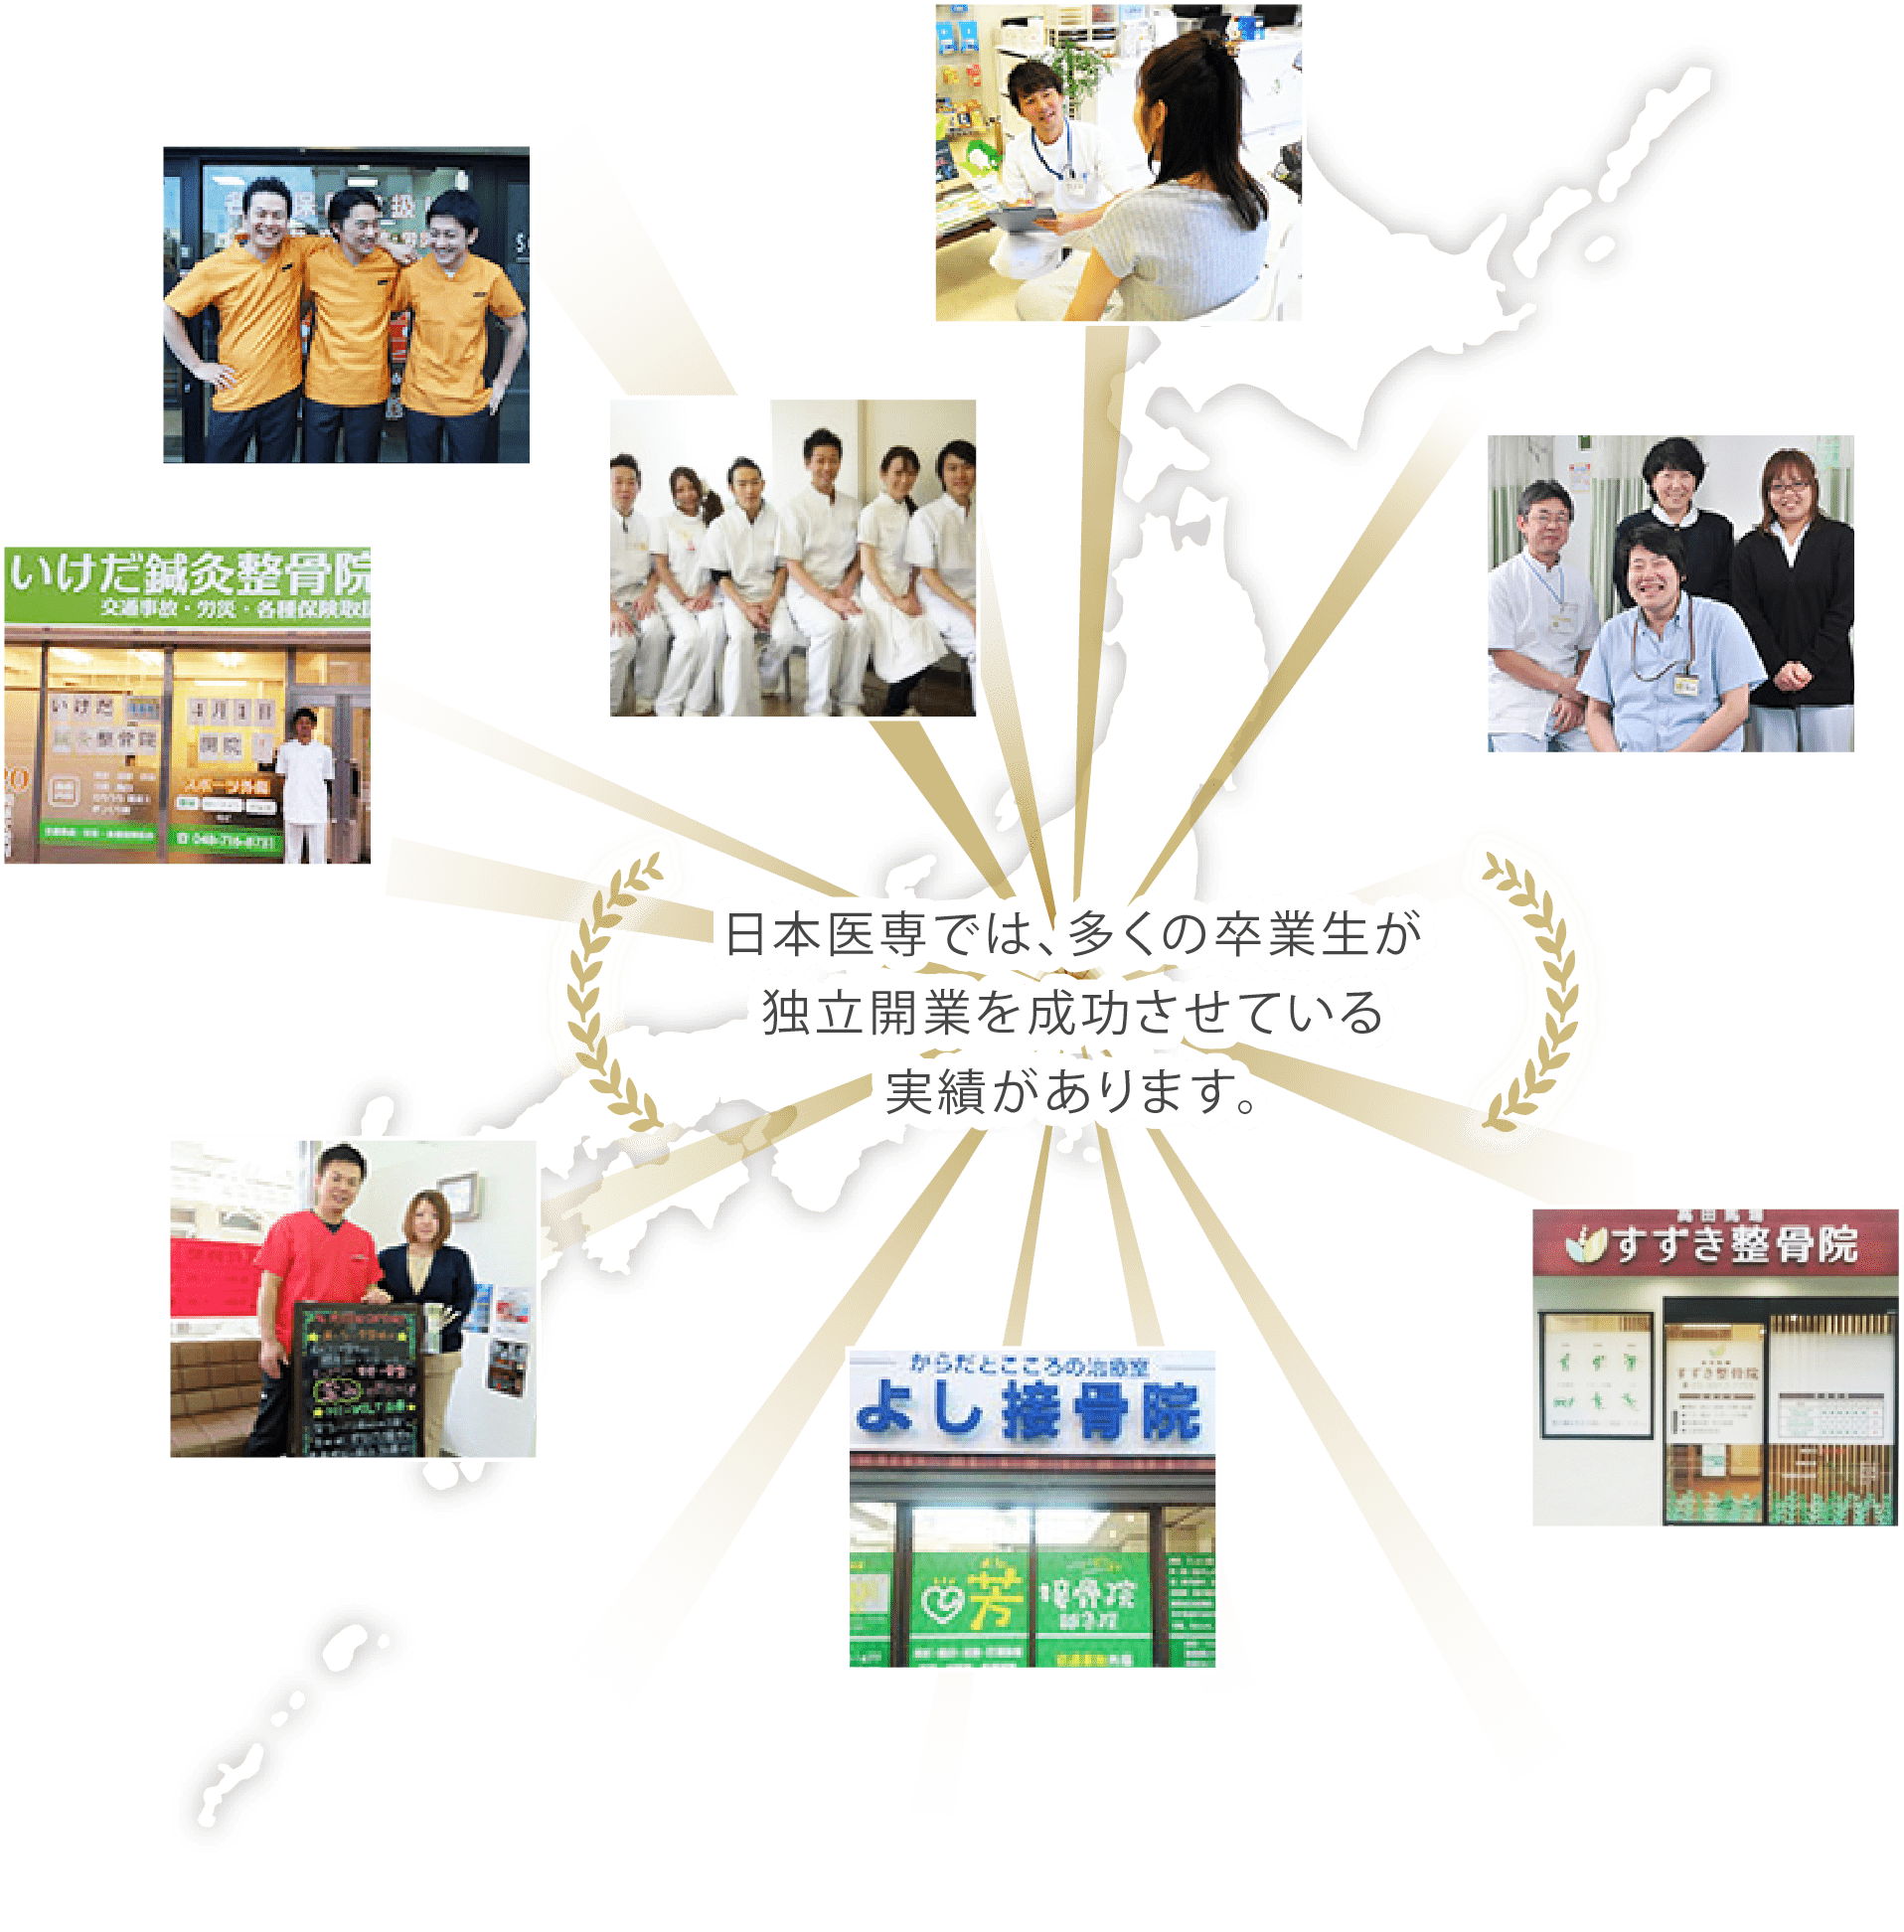 日本医専では、多くの卒業生が独立開業を成功させている実績があります。